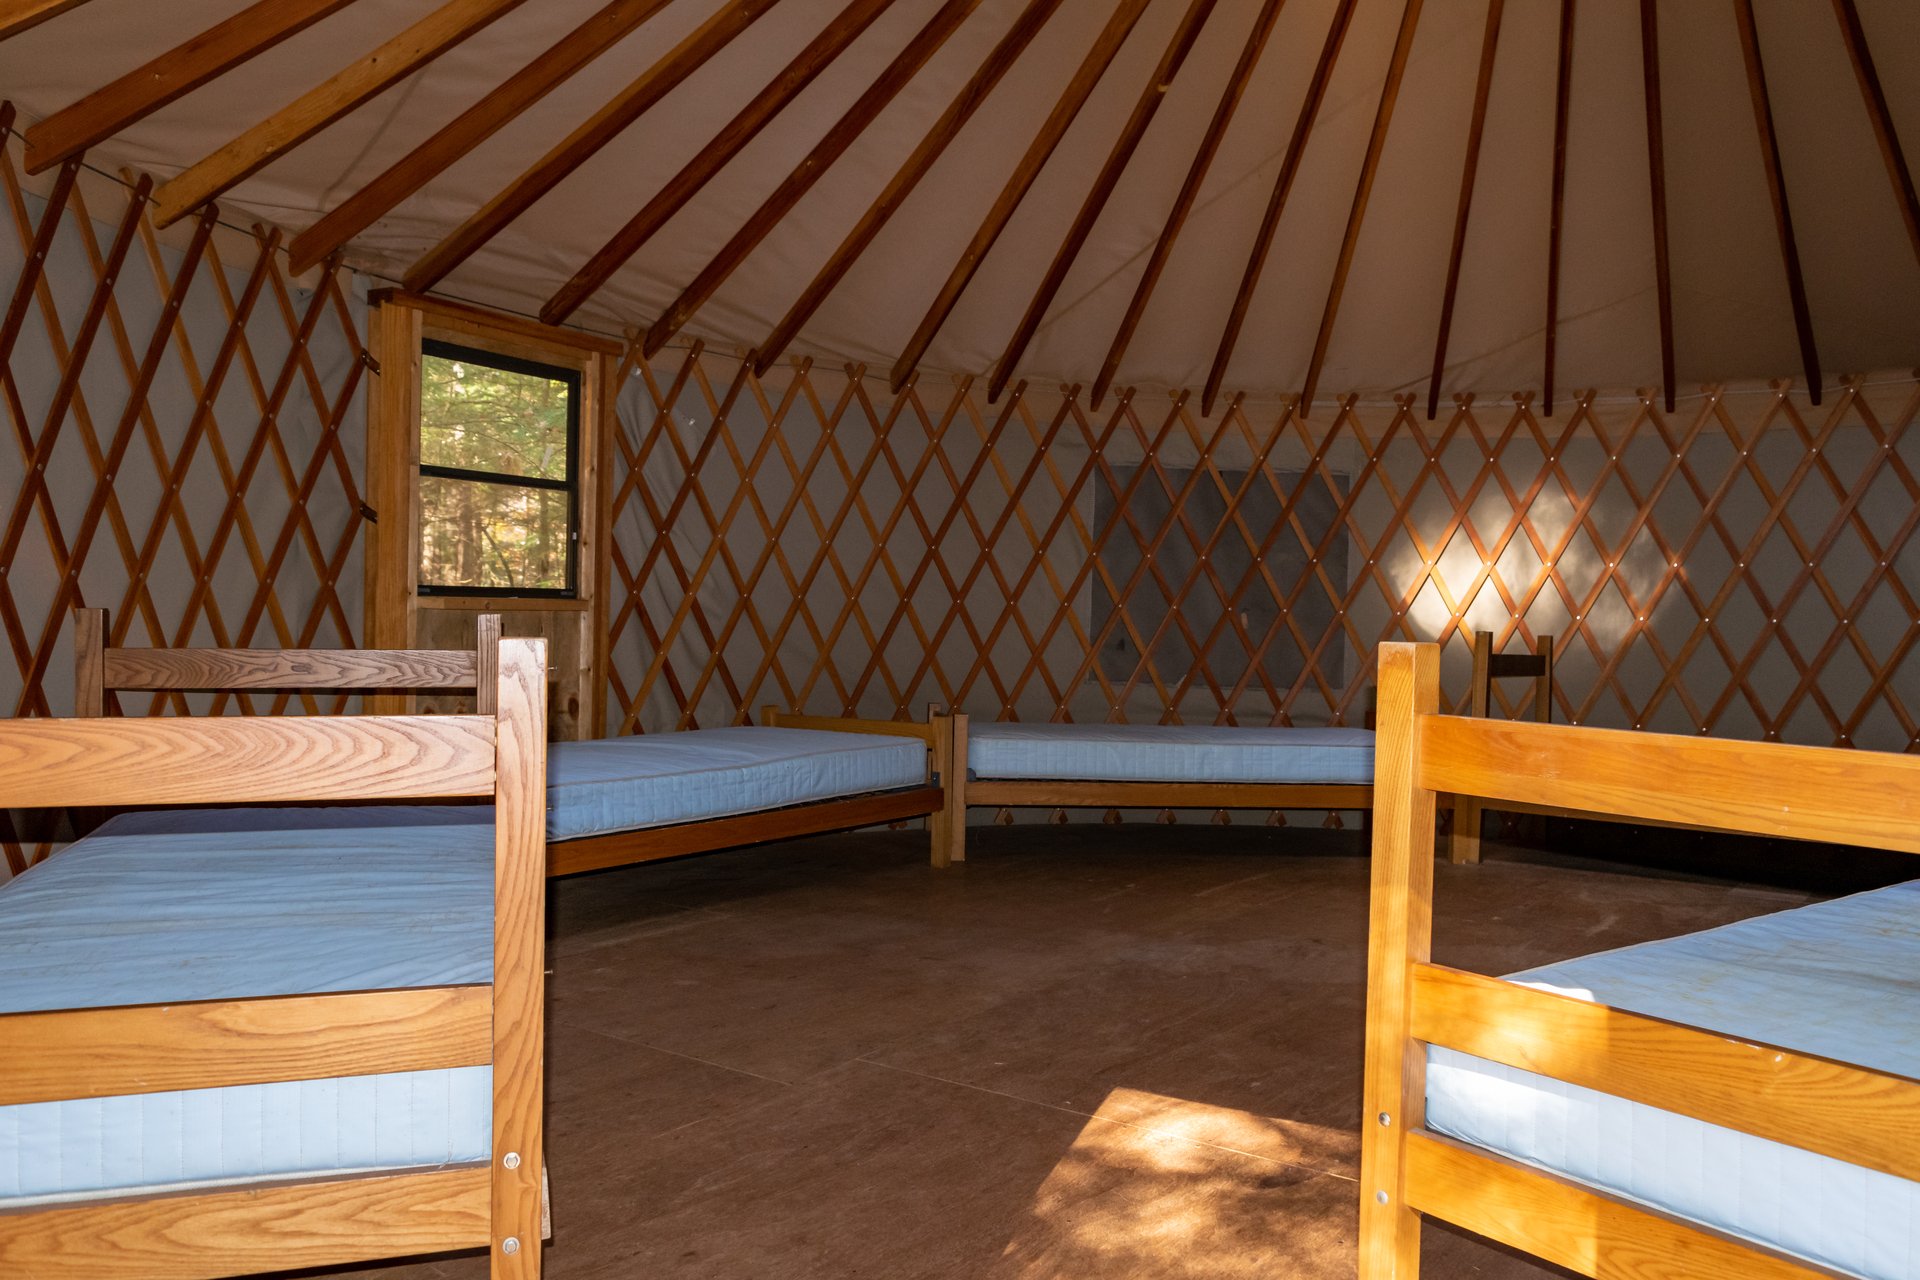 beds inside a yurt